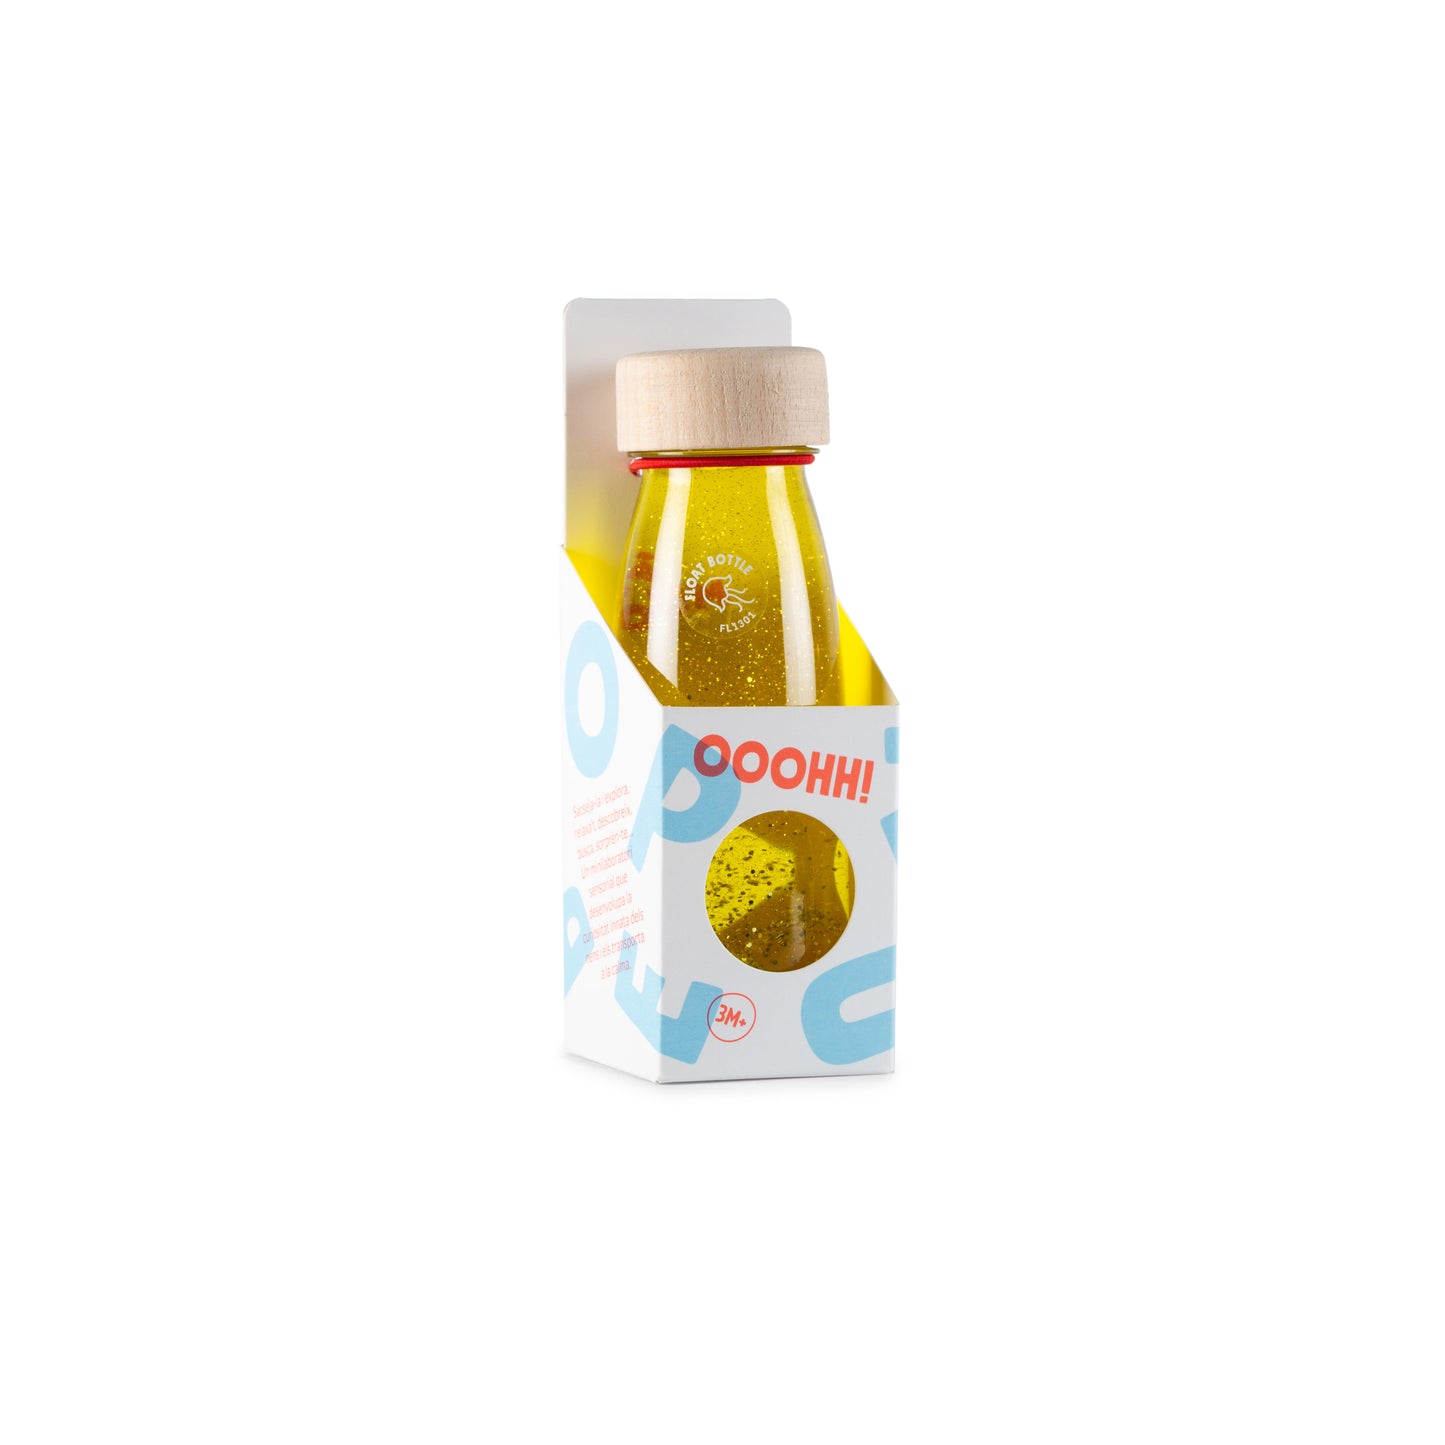 Botella sensorial amarilla en su envase original